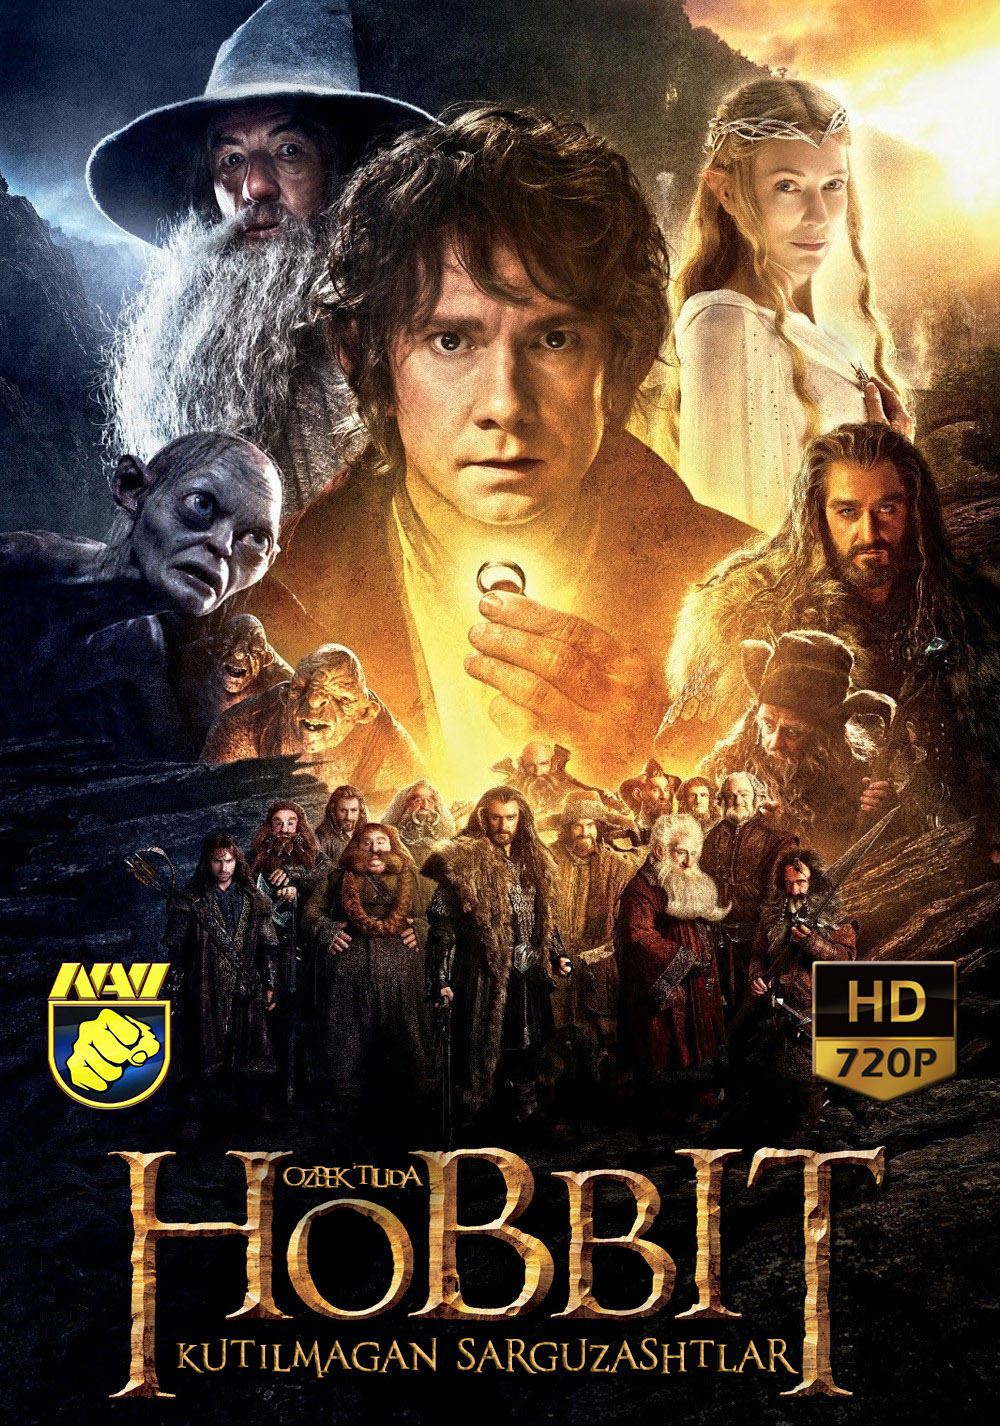 Hobbit-1:kutilmagan sarguzashtlar (o'zbek tilida)HD ONLINE SKACHAT